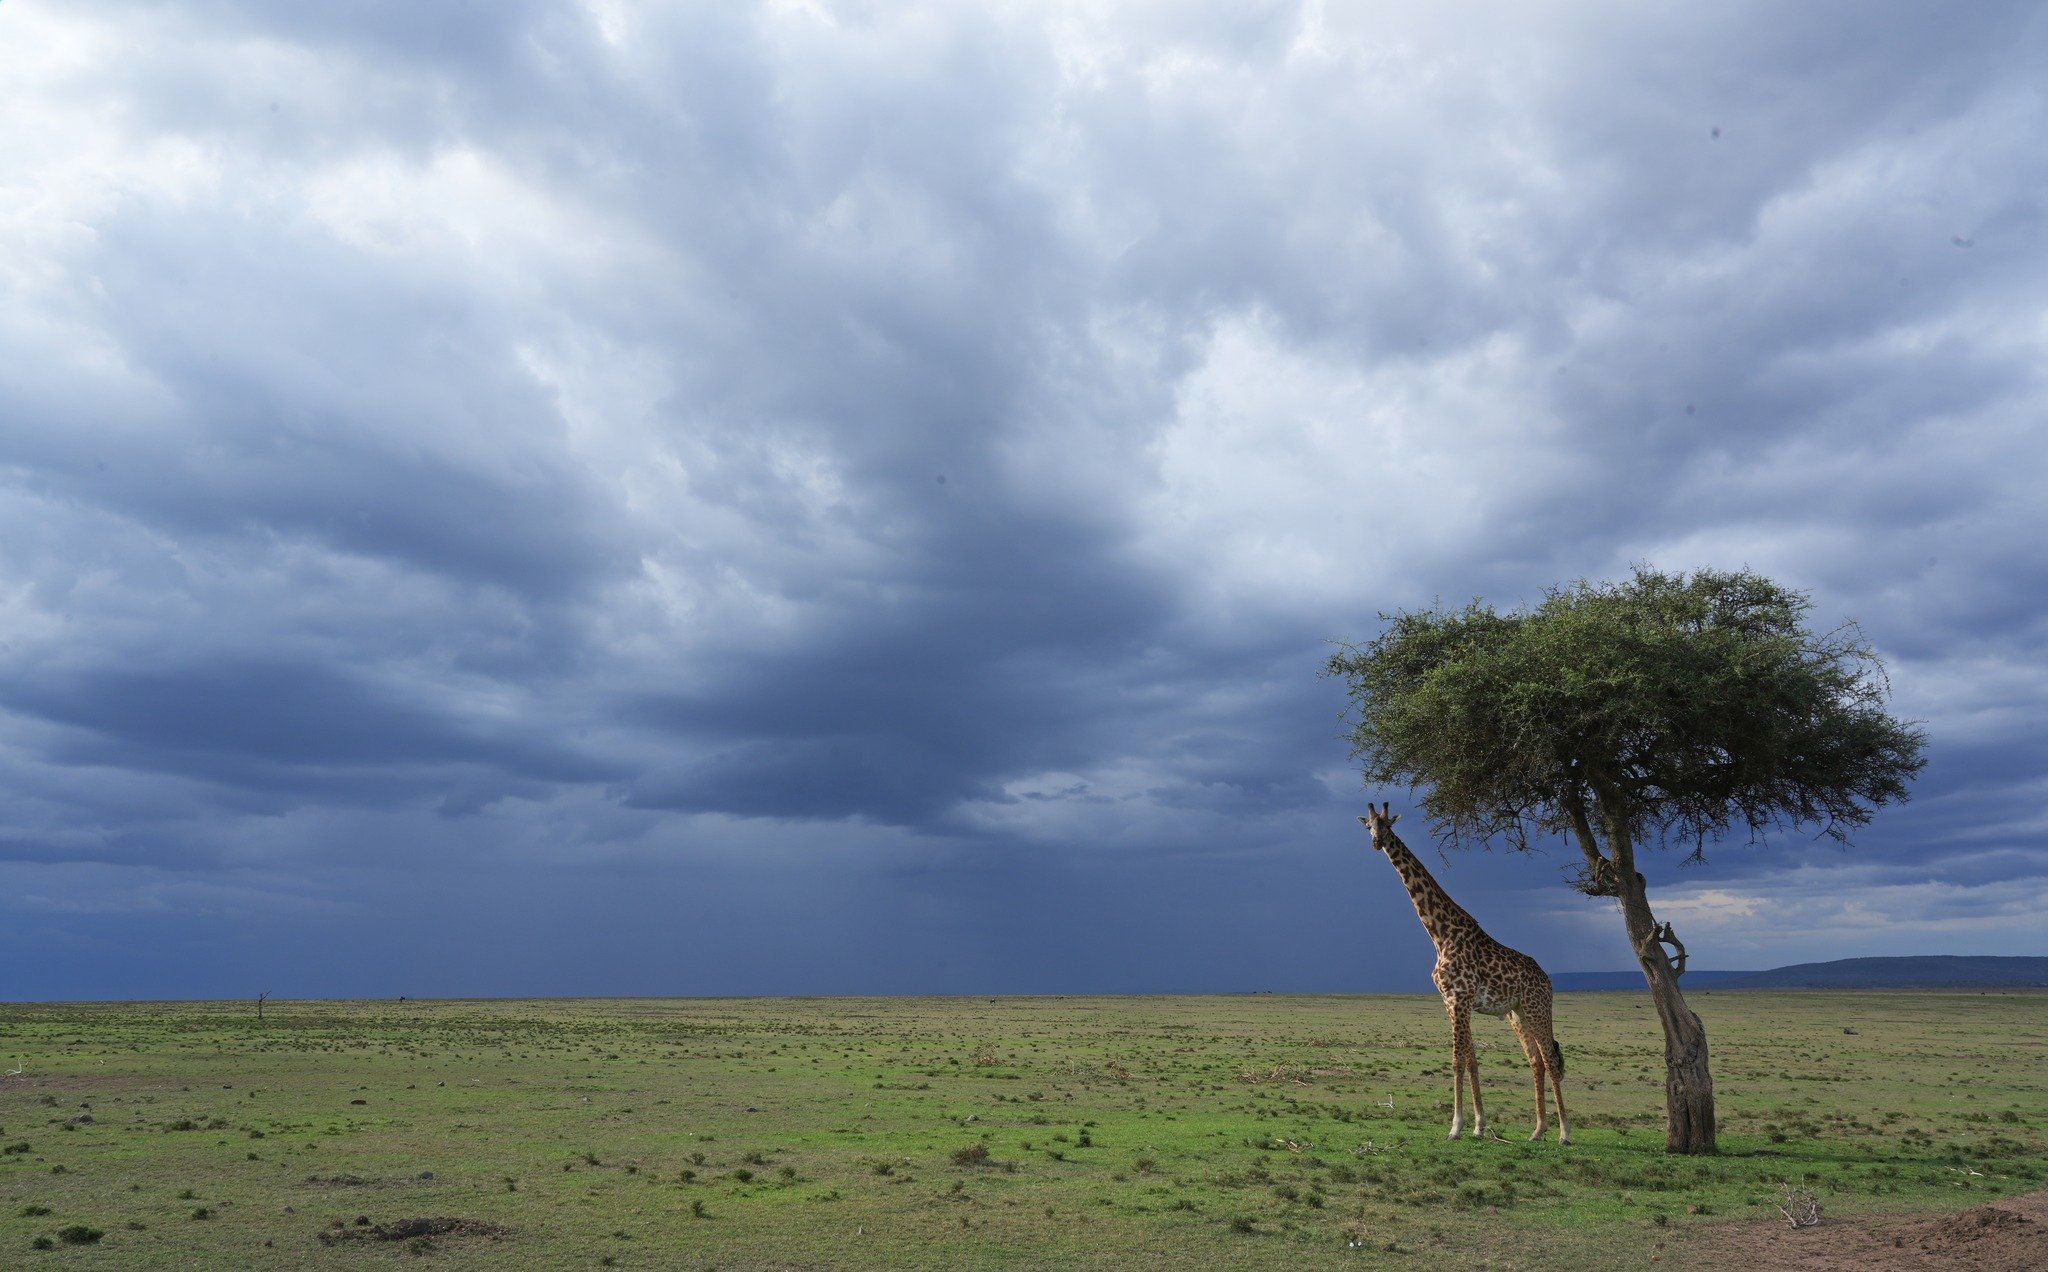 Approaching storm, Naboisho Conservancy, Kenya .jpeg